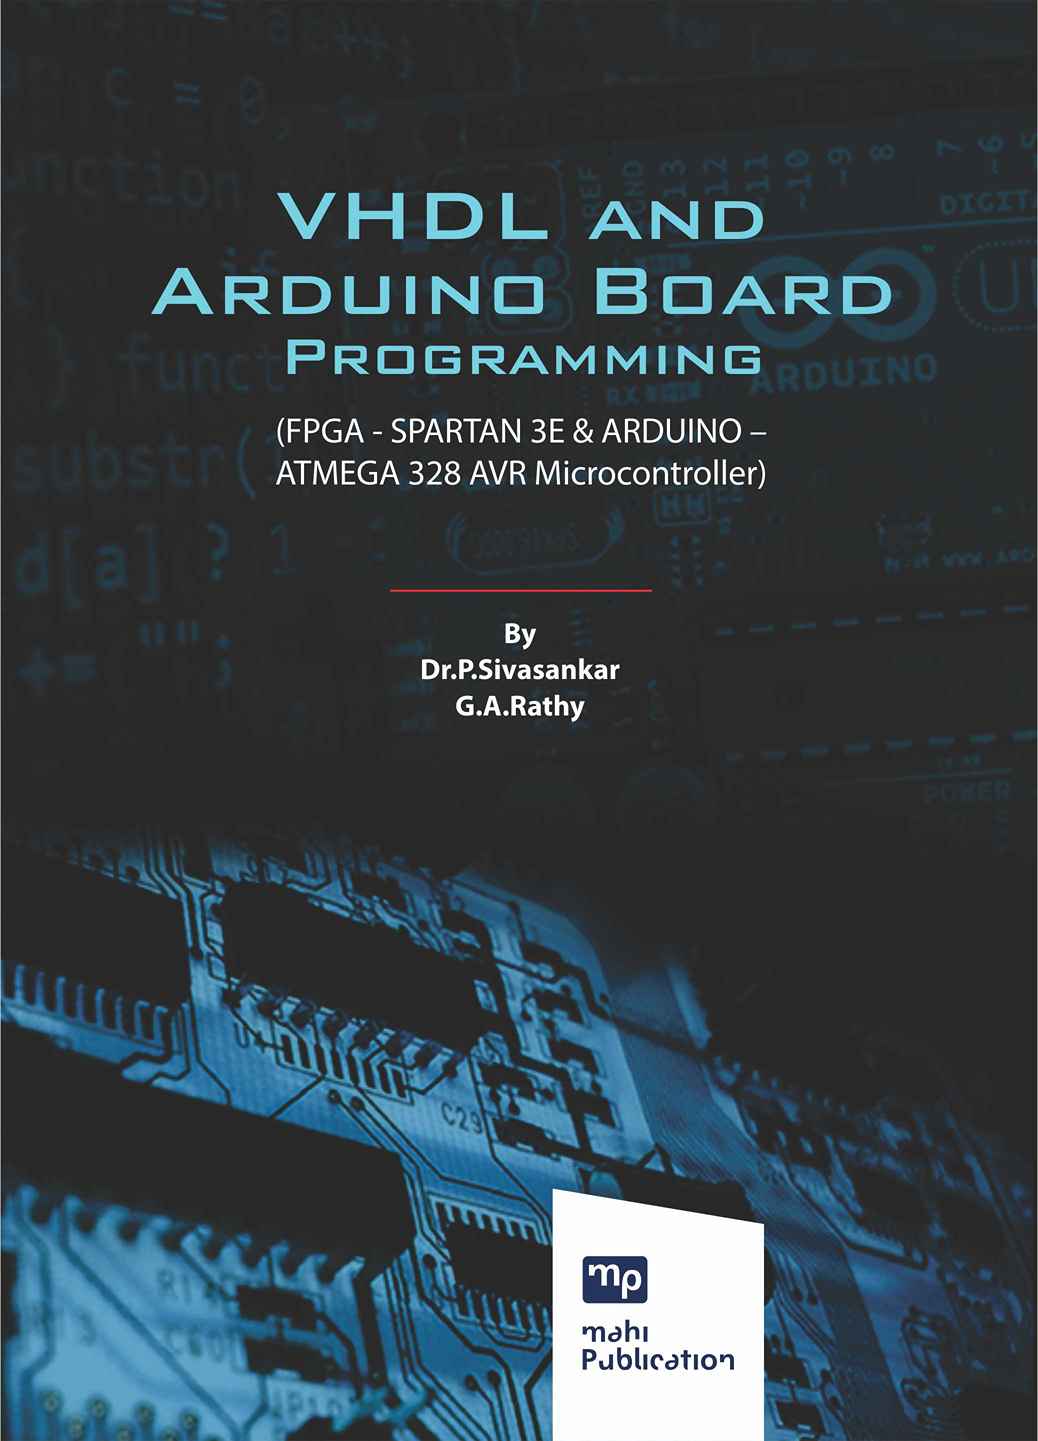 VHDL and Arduino Board Programming (FPGA - SPARTAN 3E & ARDUINO – ATMEGA 328 AVR Microcontroller)